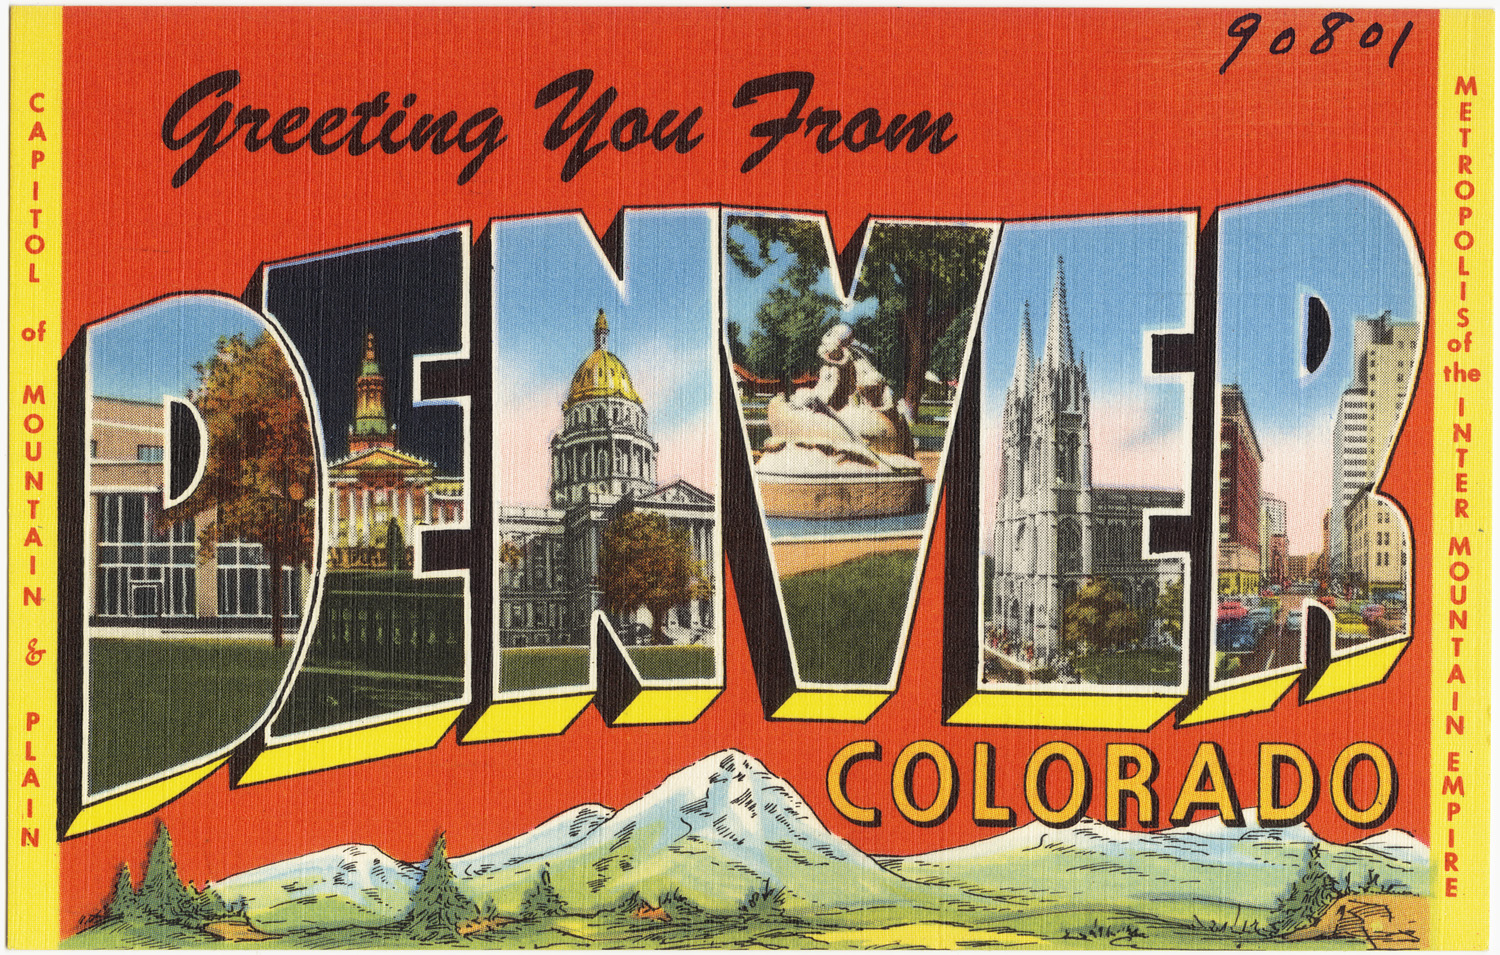 Greeting You From Denver, Colorado